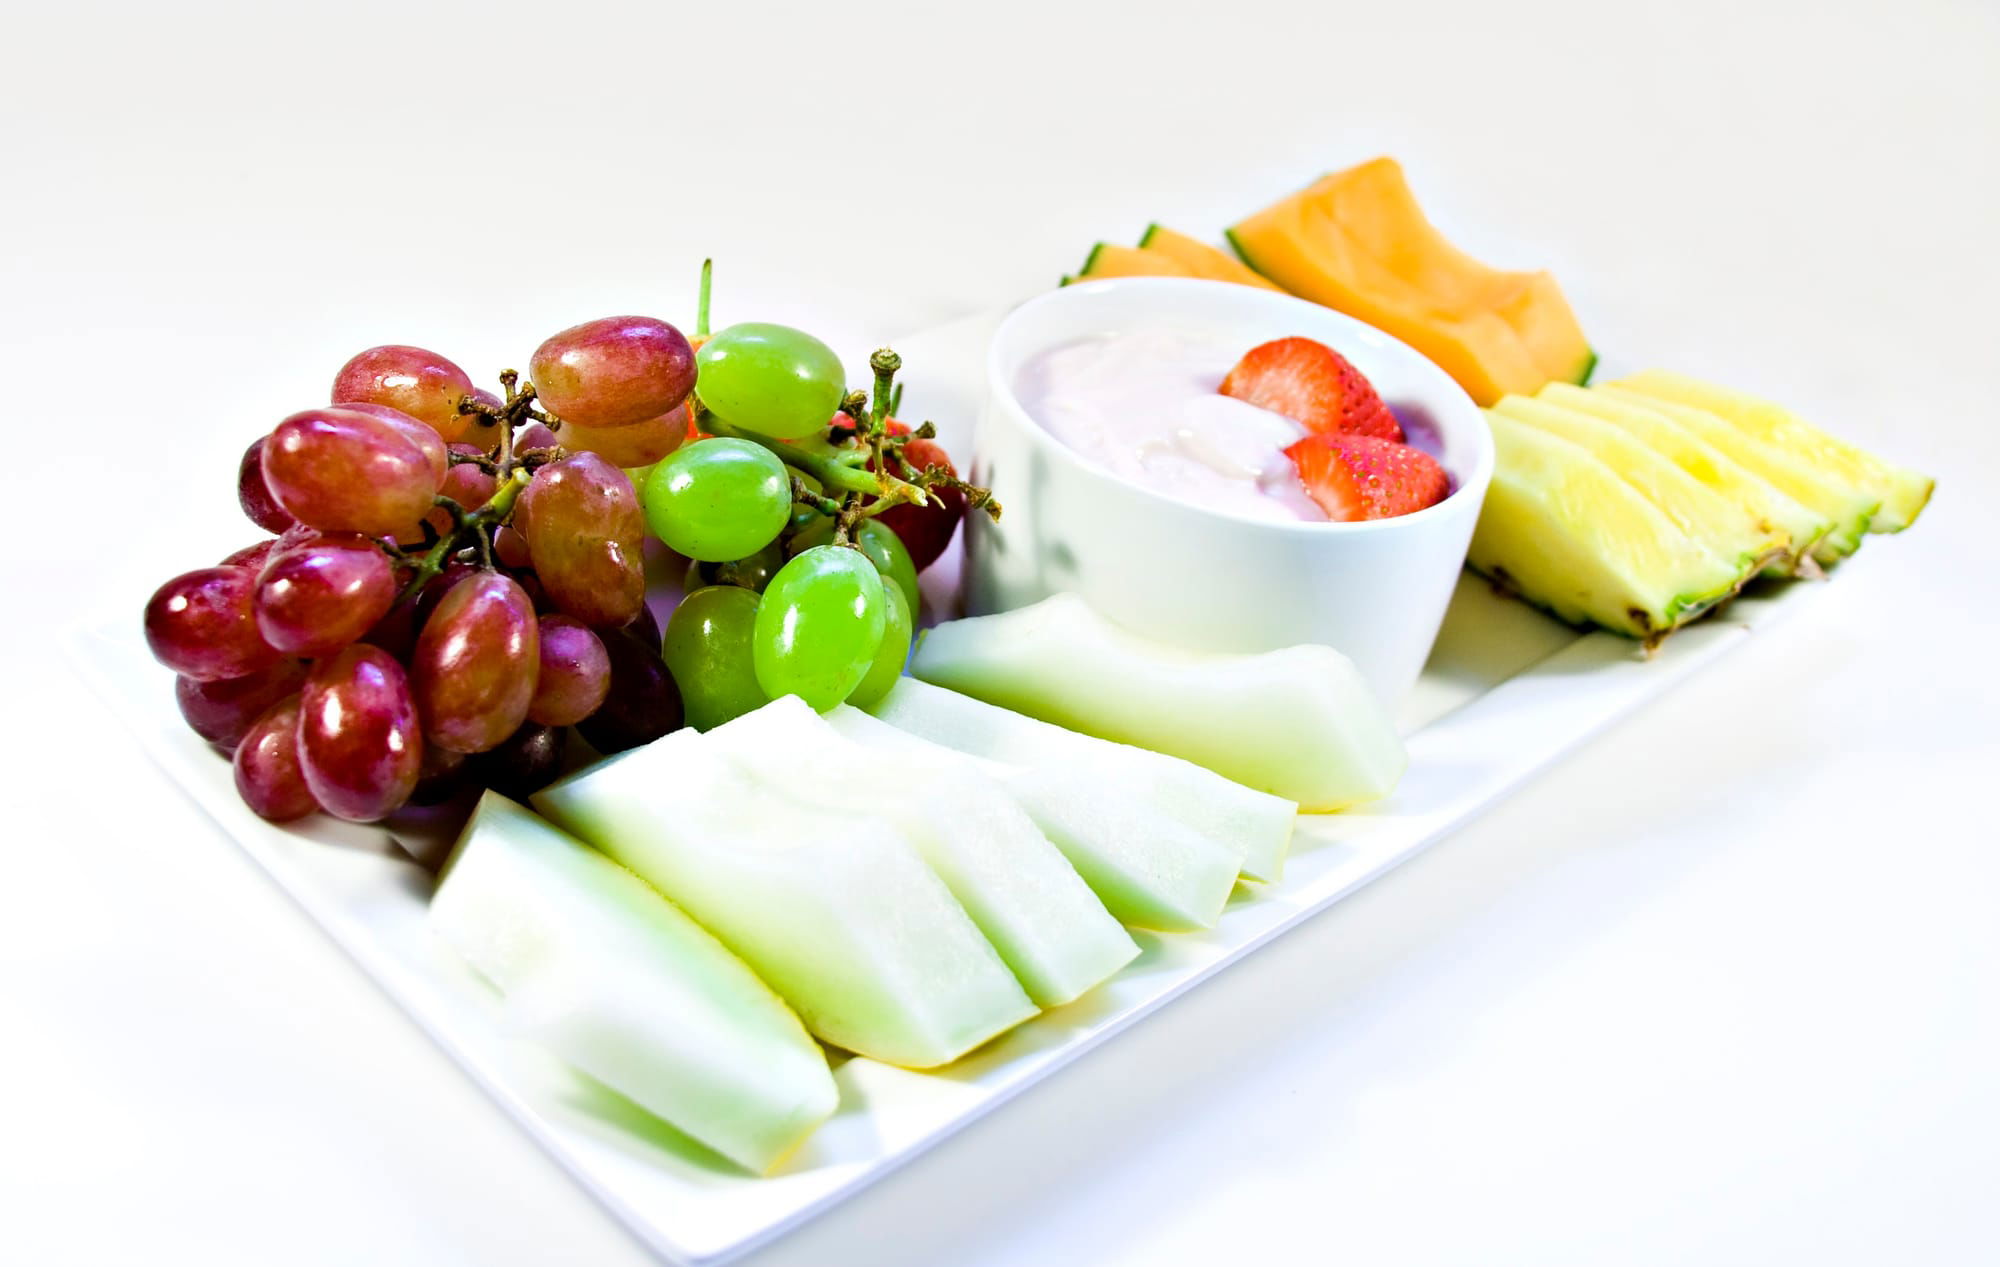 Tropical and seasonal fruit platters